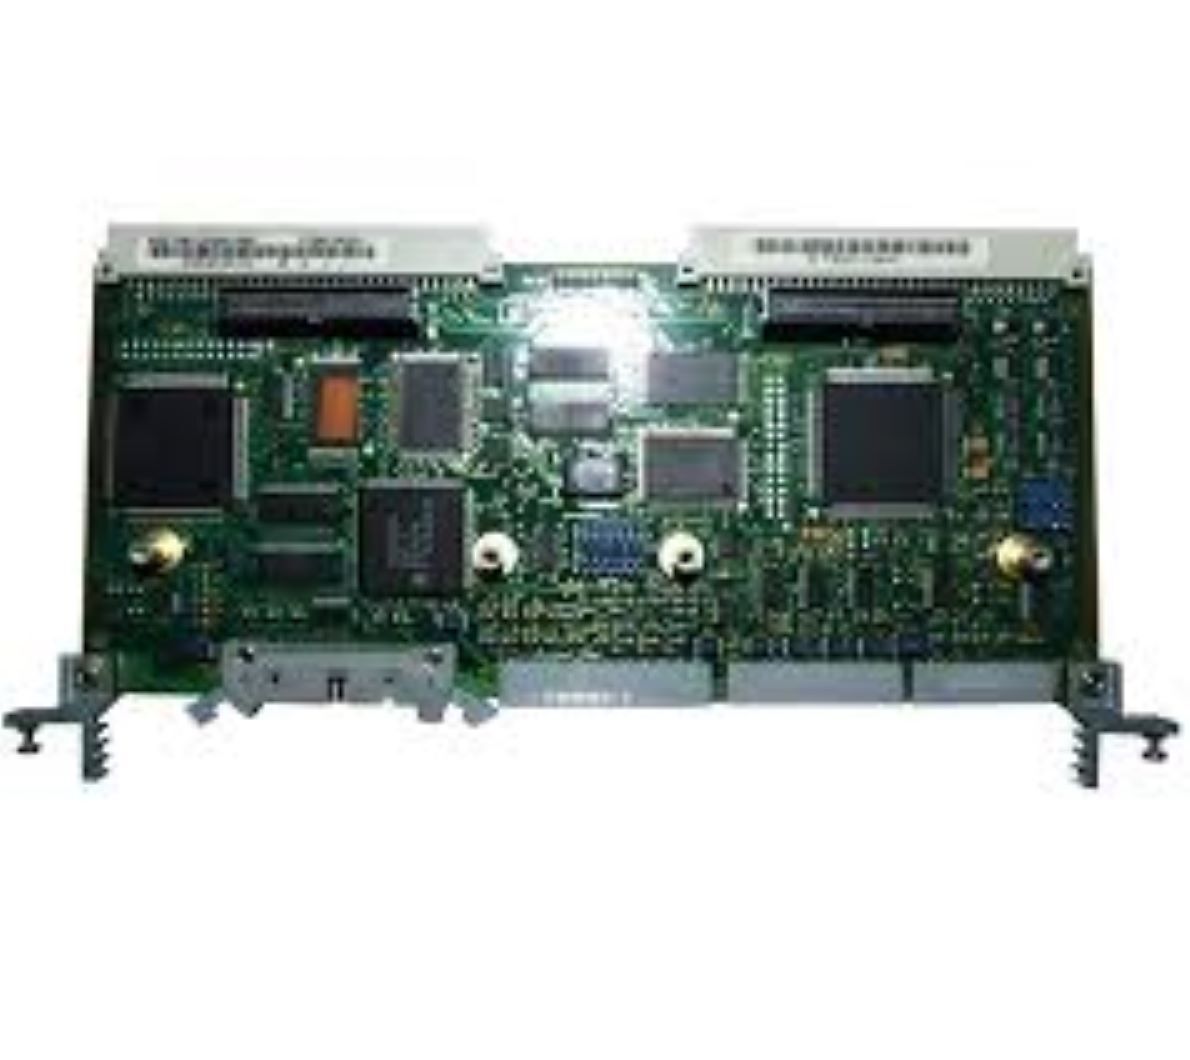 6SE7090-0xxx84-OAB0-siemens programmable logic controller